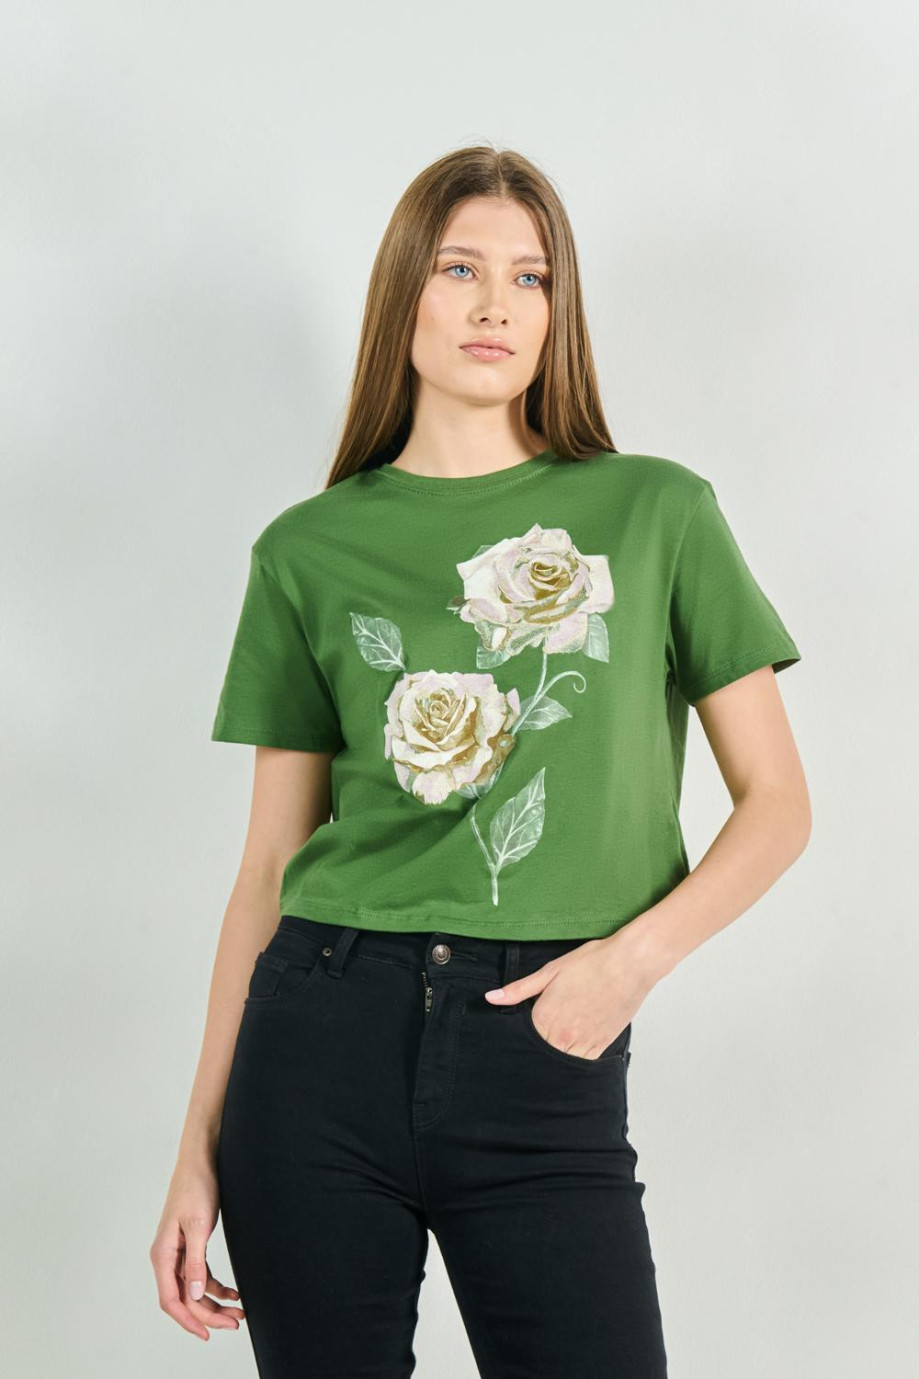 Camiseta unicolor crop top con diseño floral y manga corta